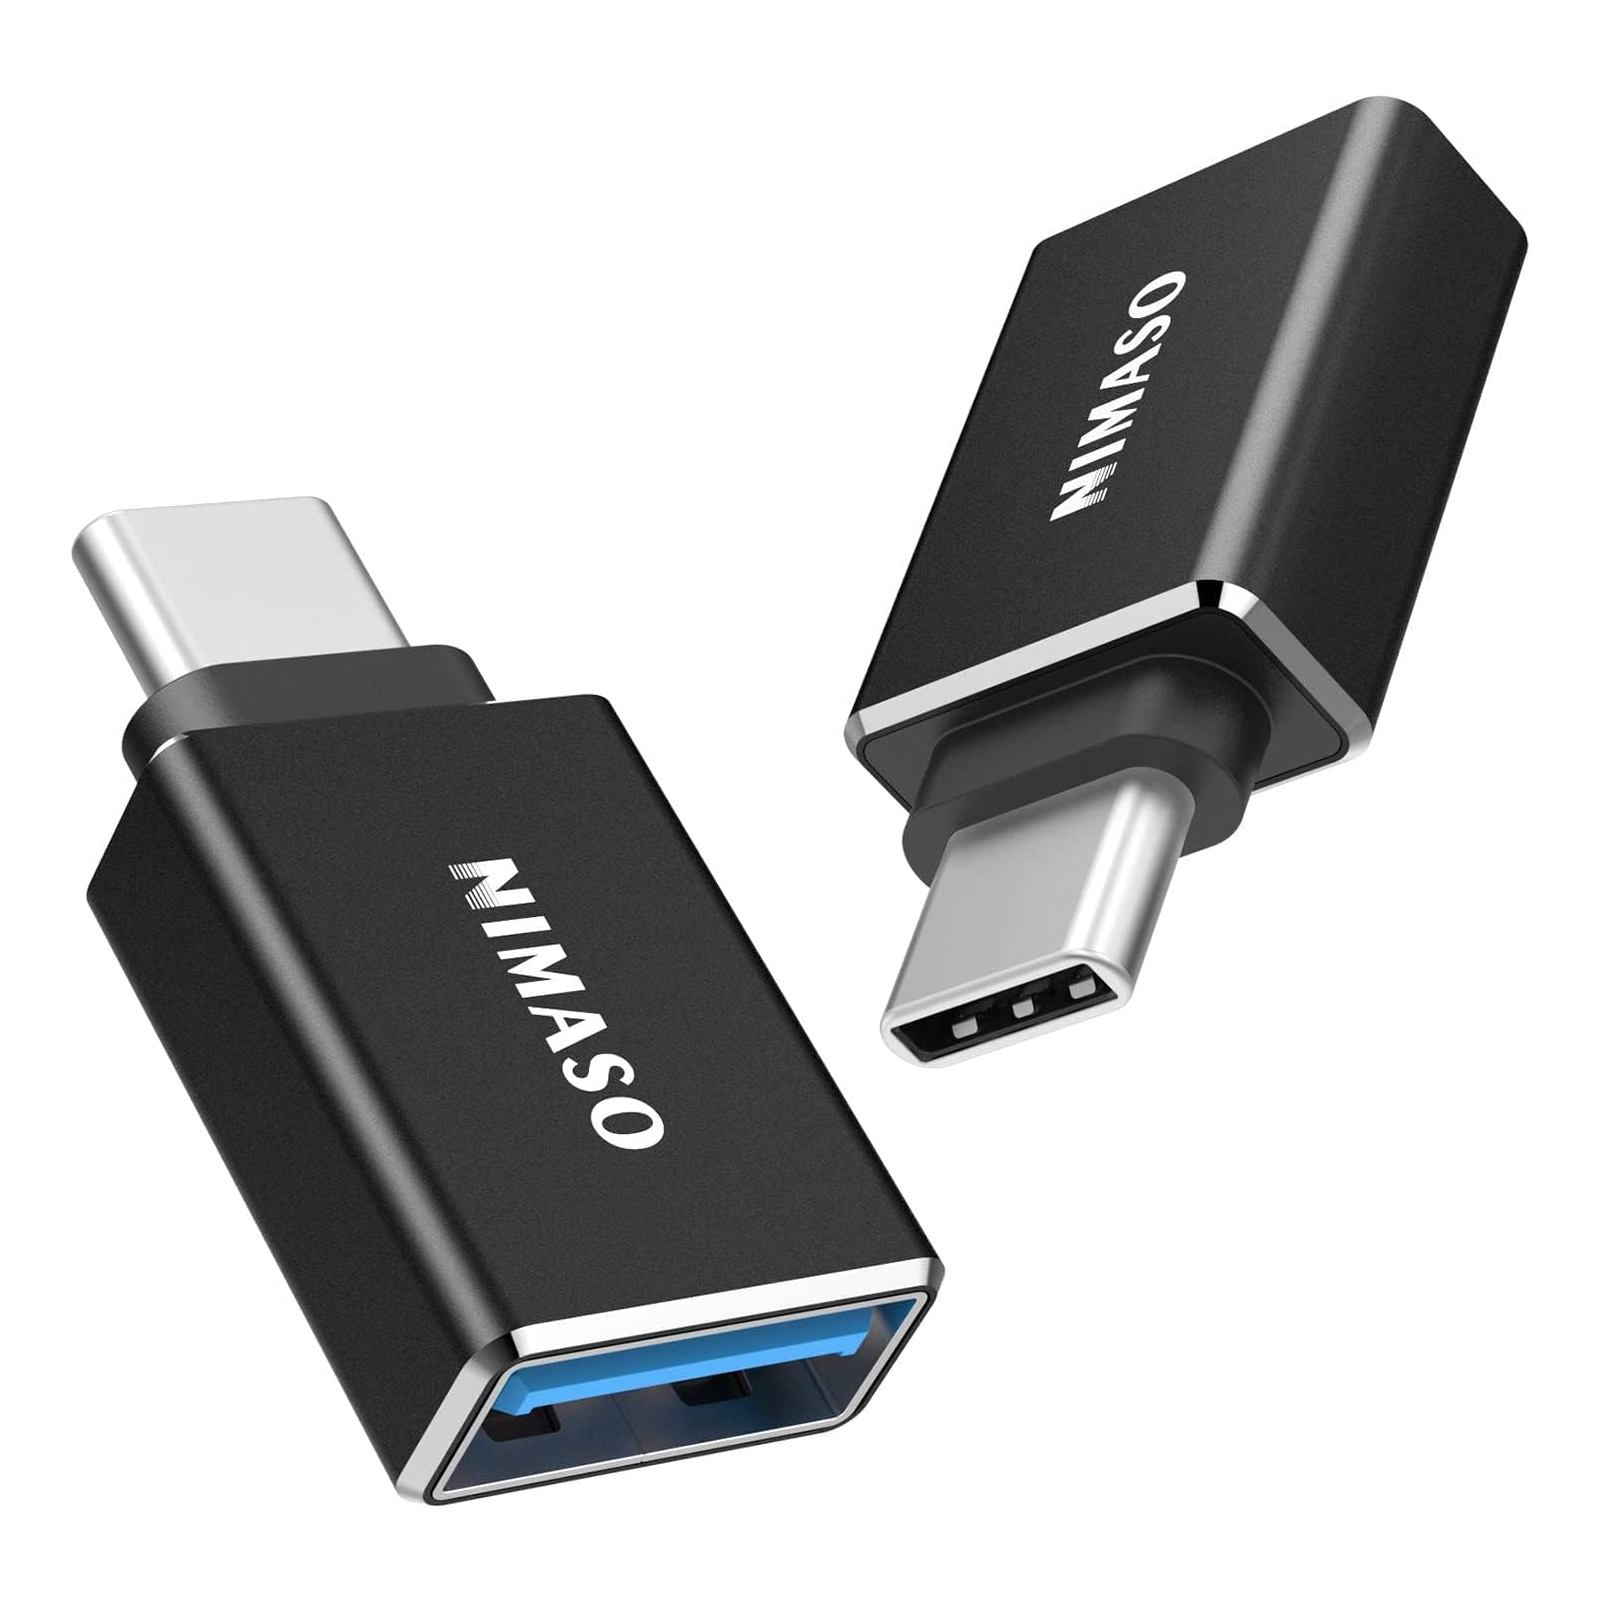 NIMASO USBアダプタ USB C  USB 3.0 【変換アダプタ】2個セット - NIMASO公式サイト